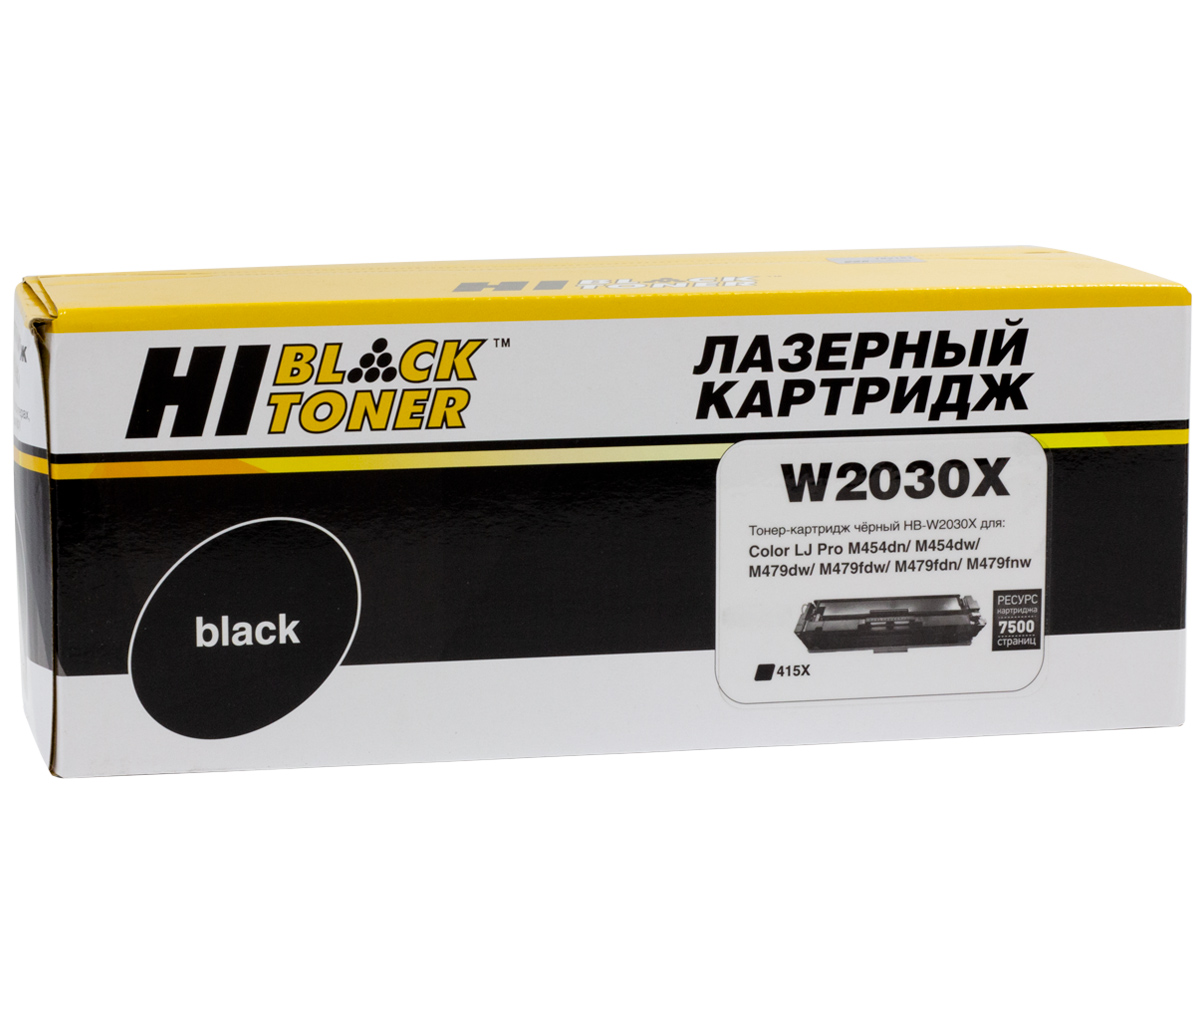 Тонер-картридж Hi-Black (HB-W2030X) для HP Color LaserJetPro M454dn/M479dw, №415X, Bk, 7,5K